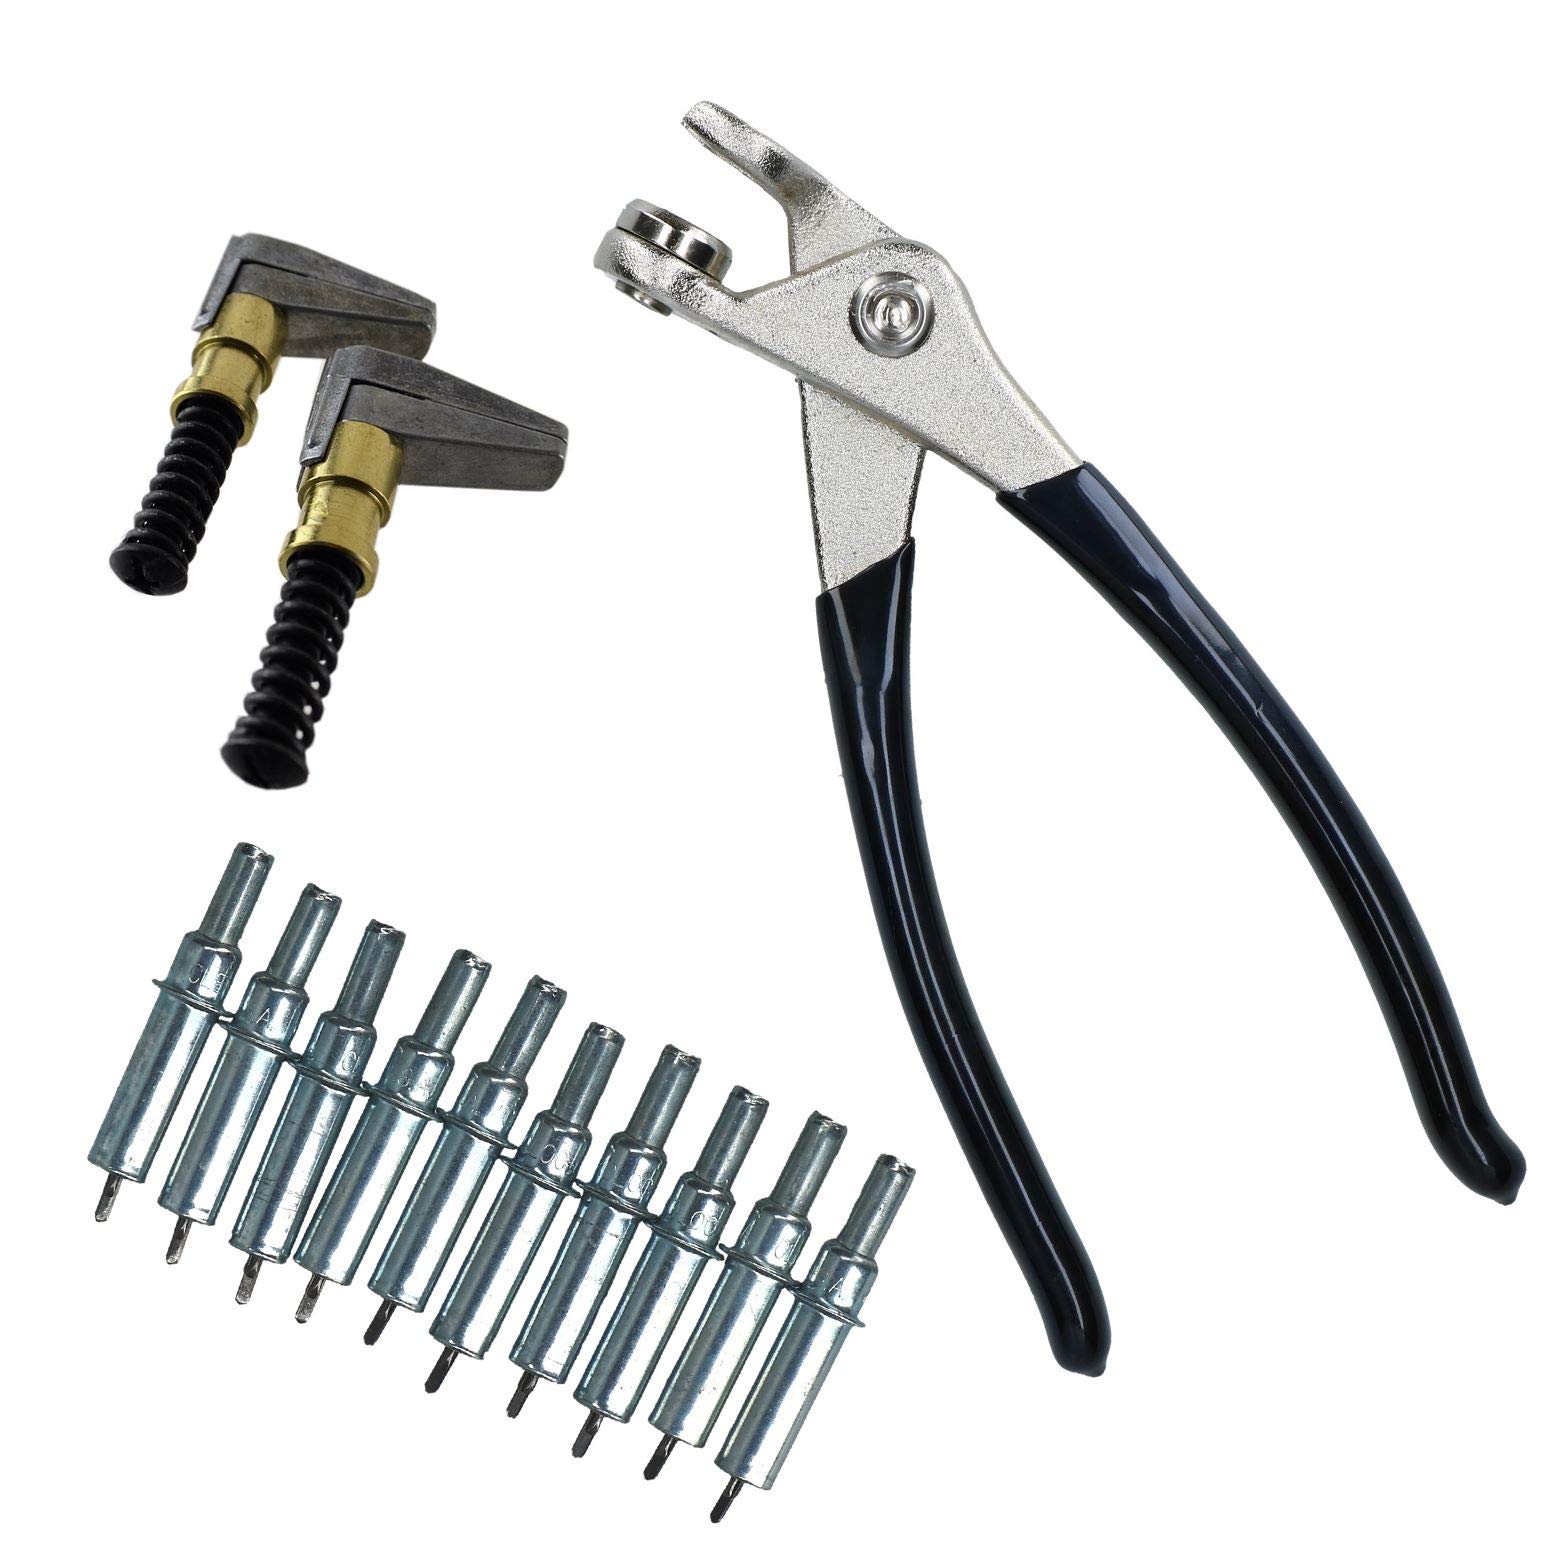 AB Tools Cleco Temporary Fasteners 3/32" Nieten Pins (10) Zangen und 2 Metallkeilspanner von AB Tools